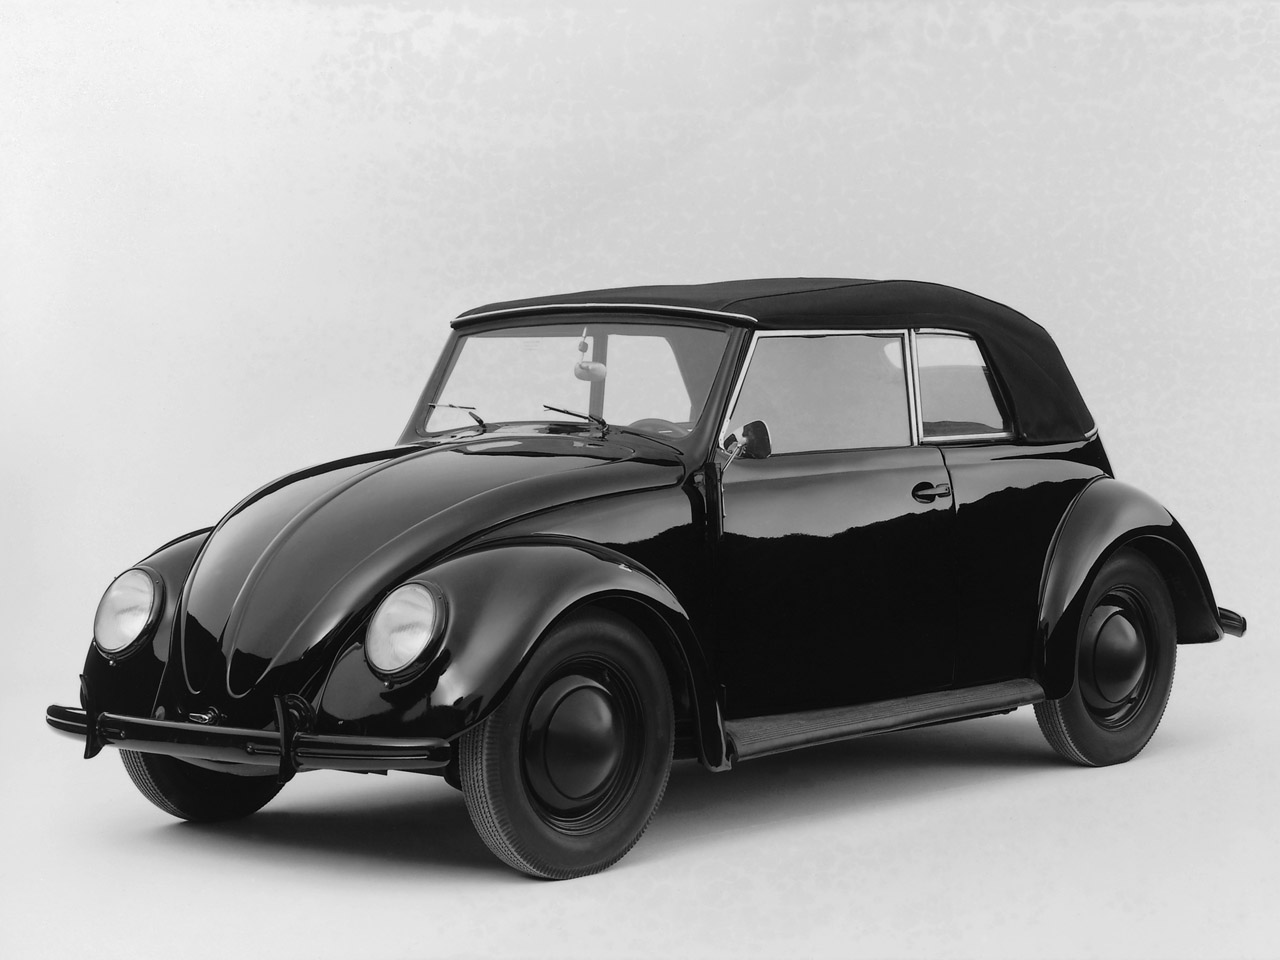 Volkswagen Beetle 25 Sport Cabriolet. View Download Wallpaper. 1280x960